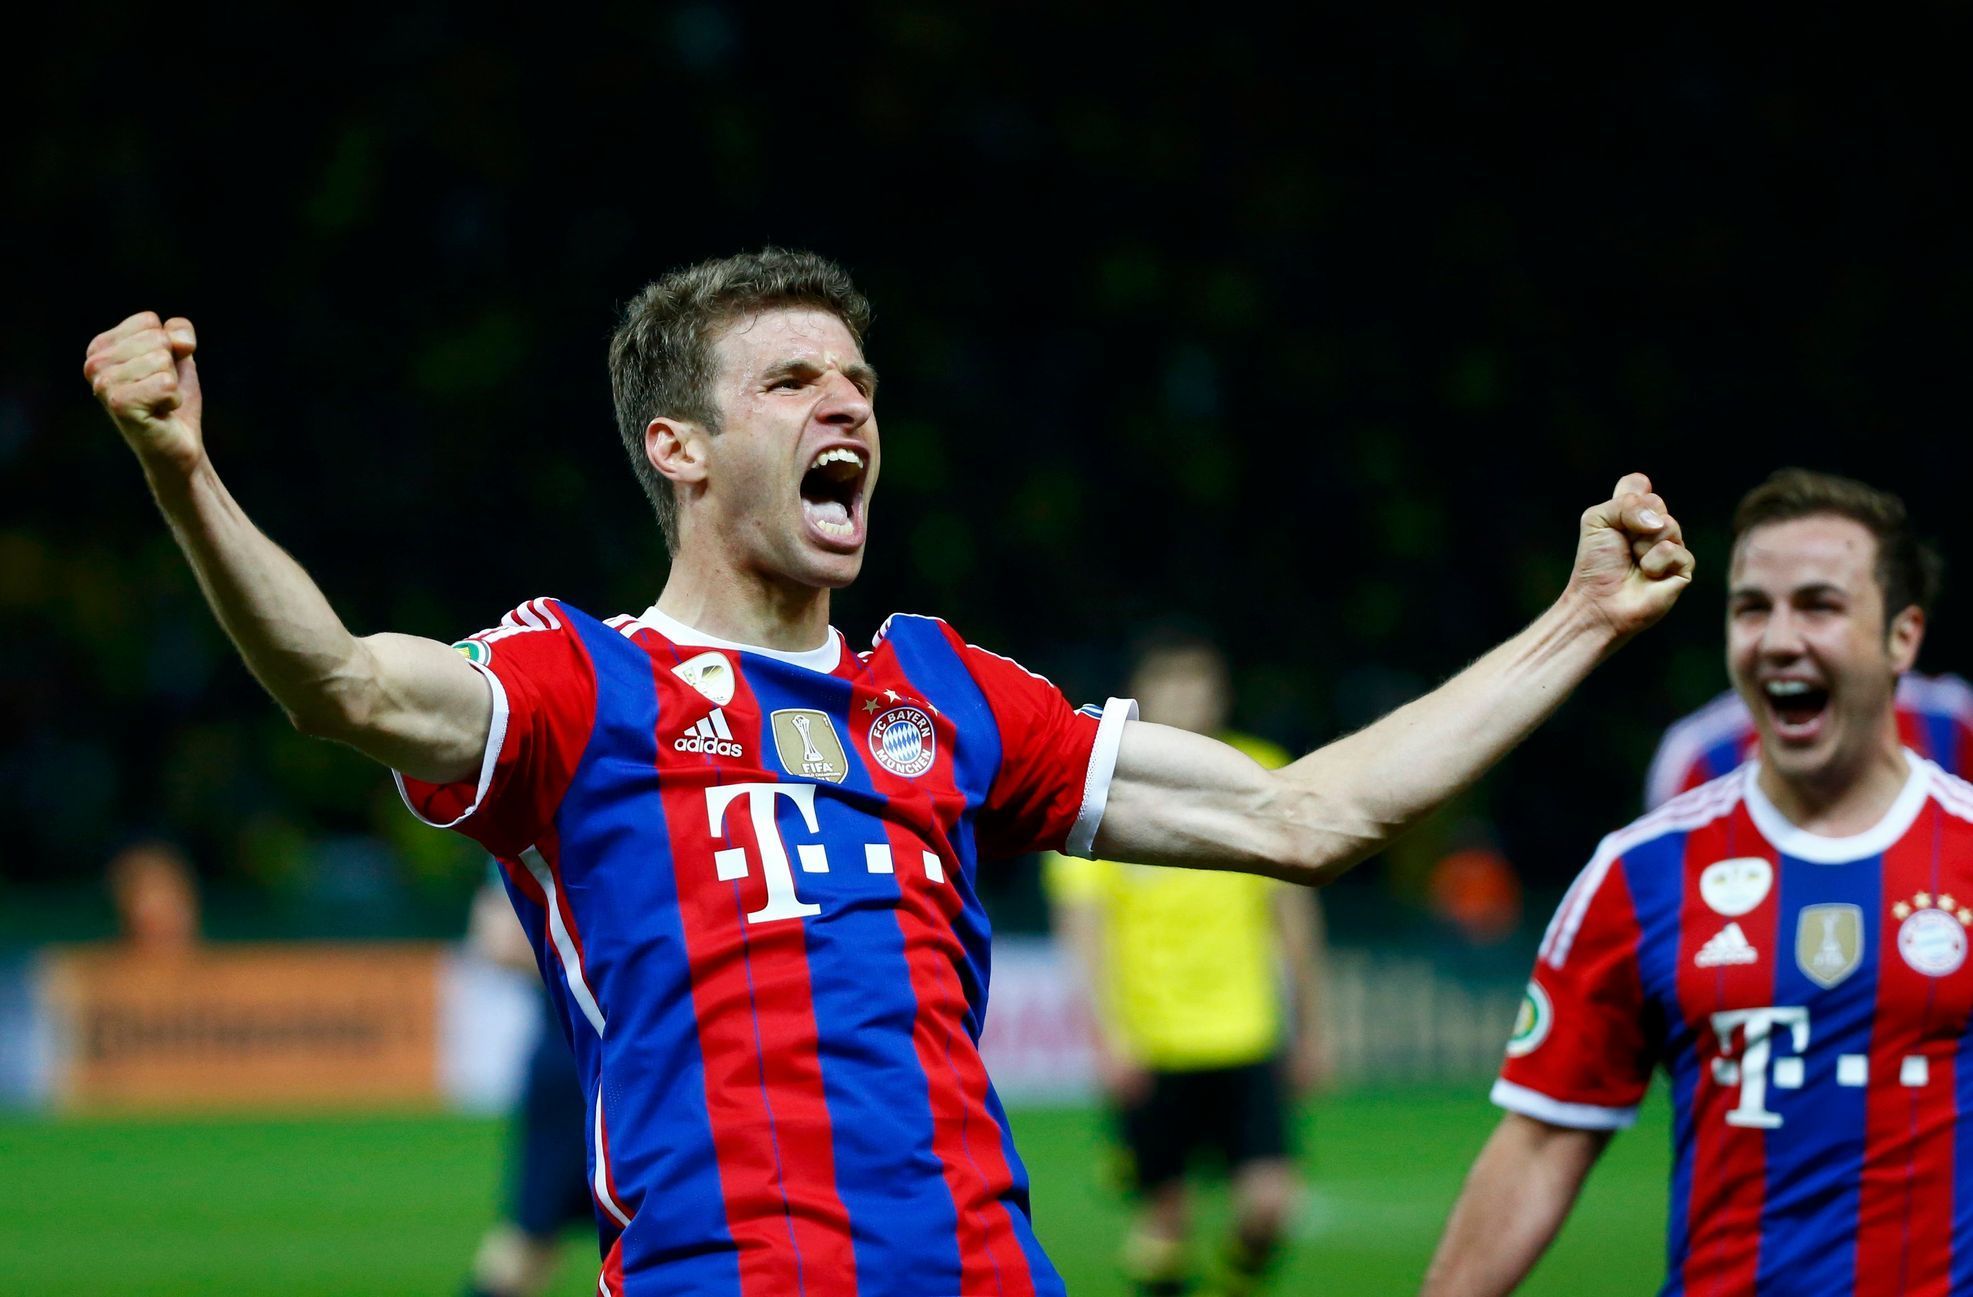 Müller slaví gól do sítě Dortmundu ve finále německého poháru